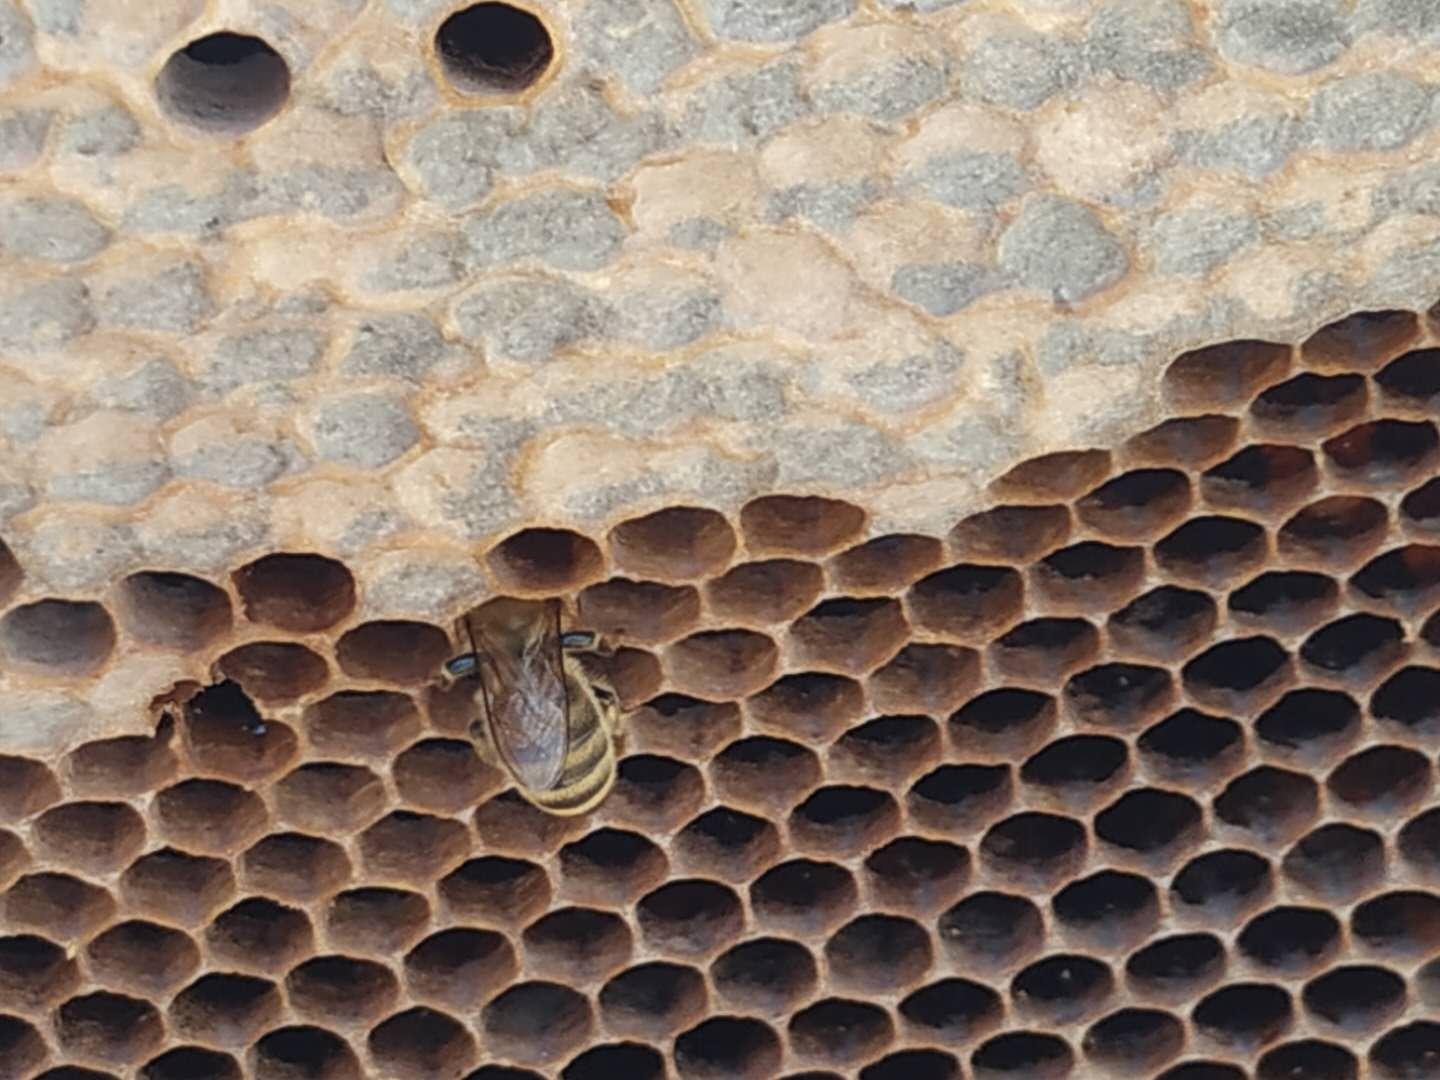 蜜蜂是如何消化和排泄的-知花蜂蜜网-,养蜂知识-蜜蜂|消化|排泄|蜜囊|马氏管|知花蜂蜜-中国蜂蜜行业门户网站-www.zhfengmi.com-文章